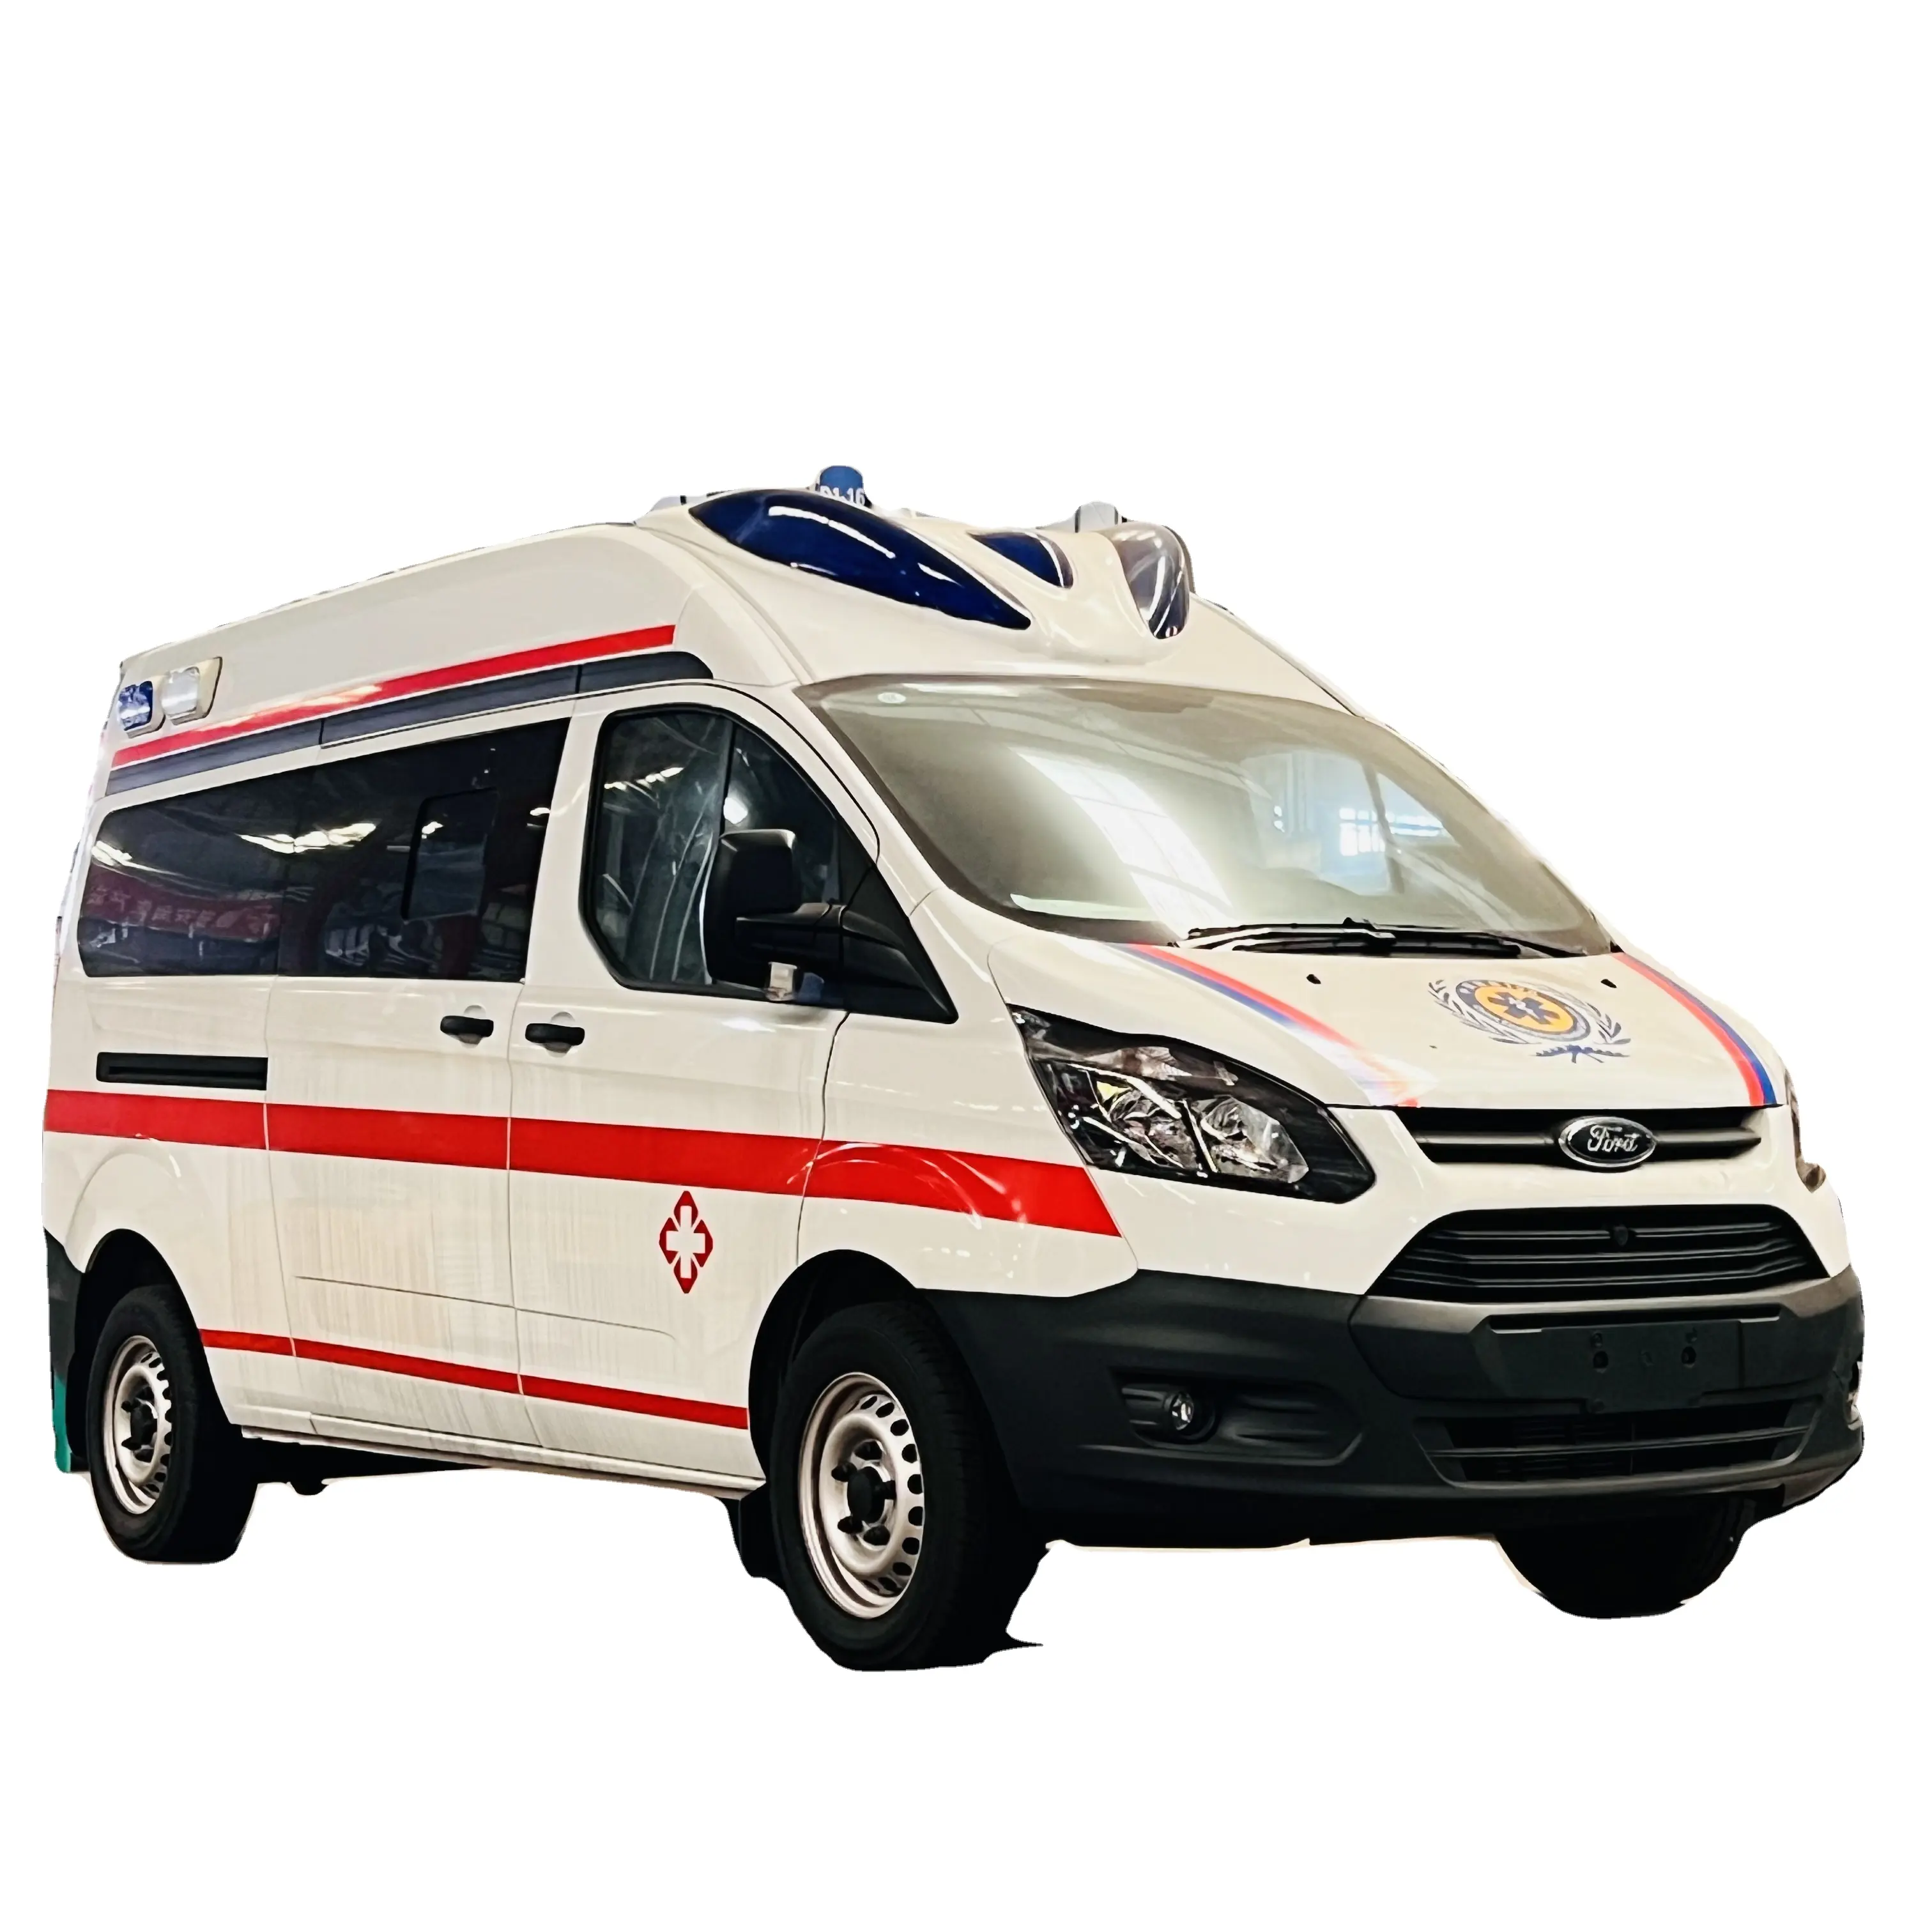 Hochwertiges und Schlussverkauf Krankenwagen Überwachung Intensivstation hochwertiges Transport-Krankenwagen Krankenhaus medizinische Rettung zu verkaufen